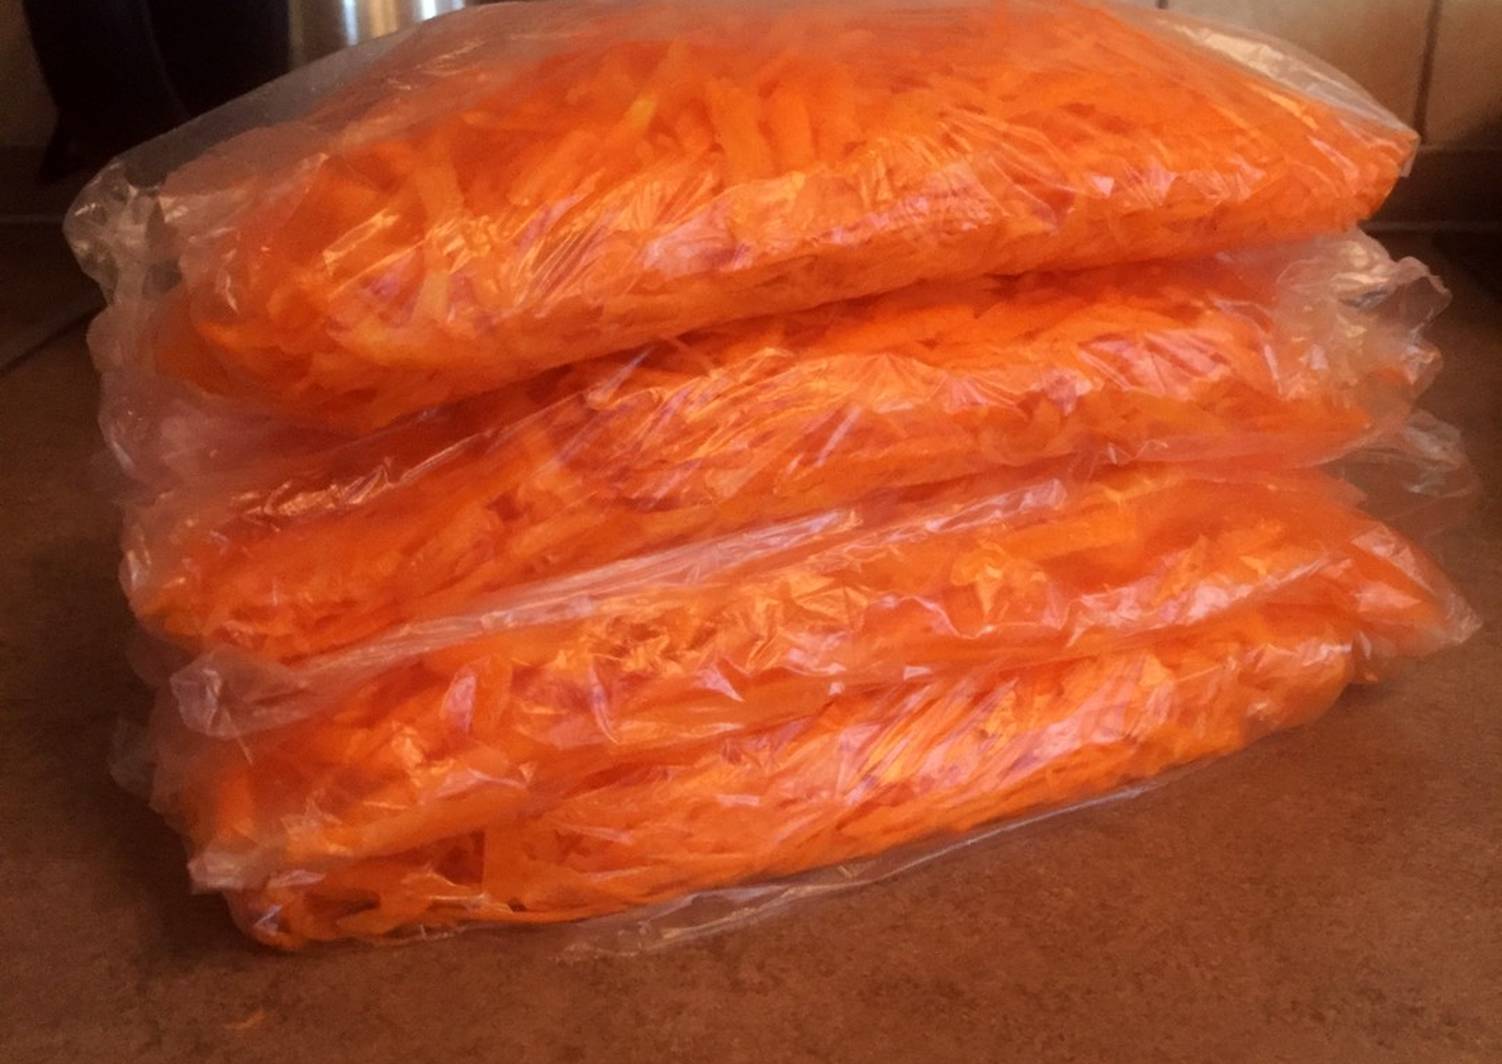 Натертая замороженная морковь